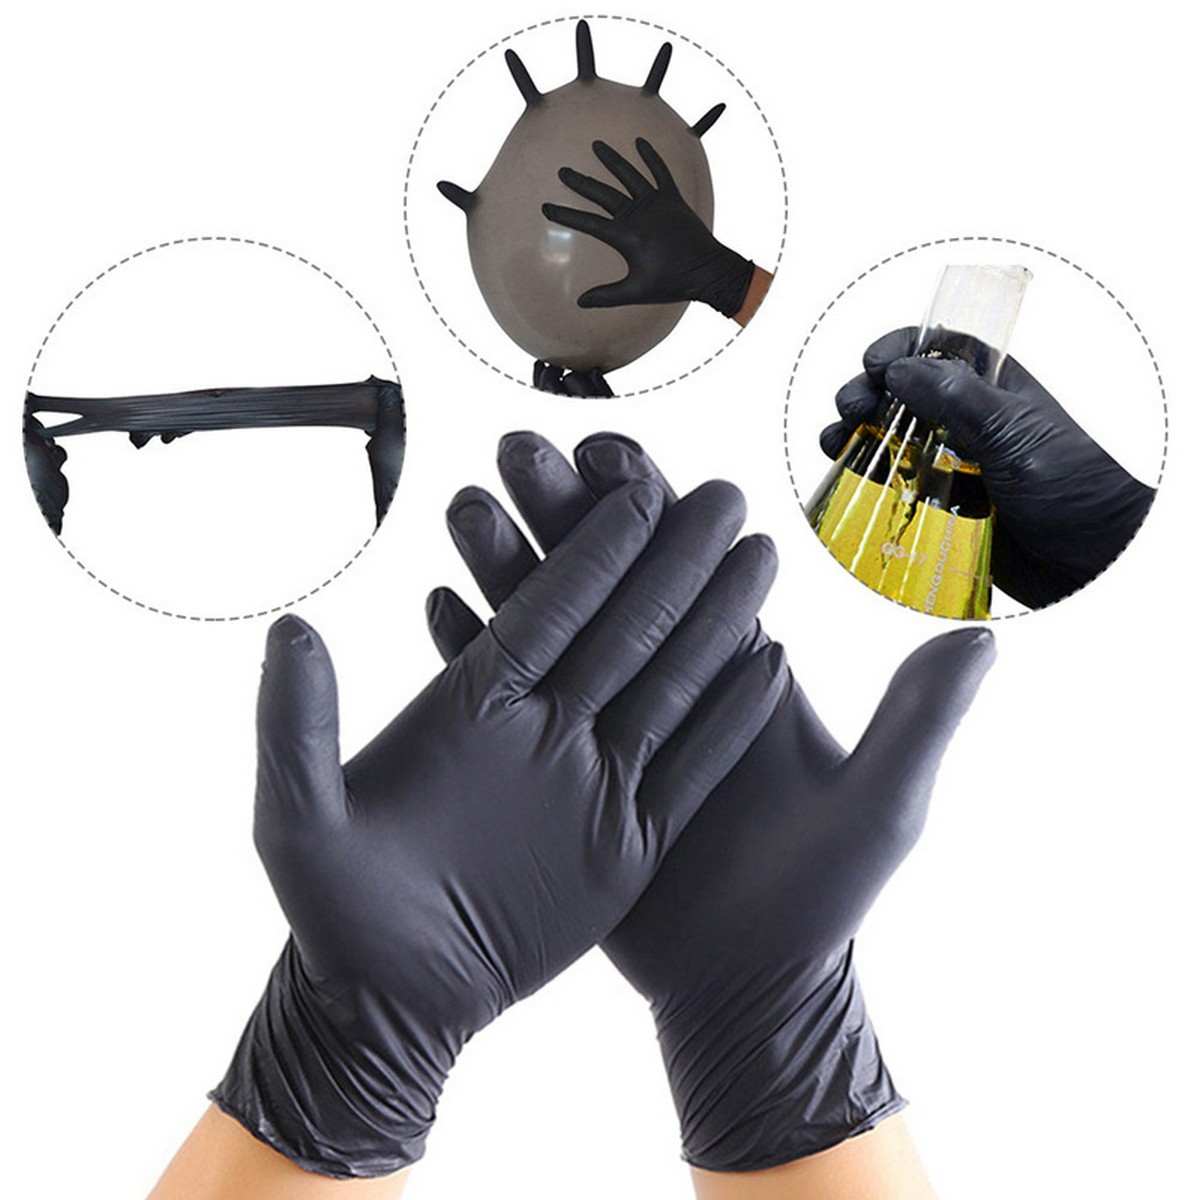 ถุงมือยางไนไตรป้องกันสีดำ